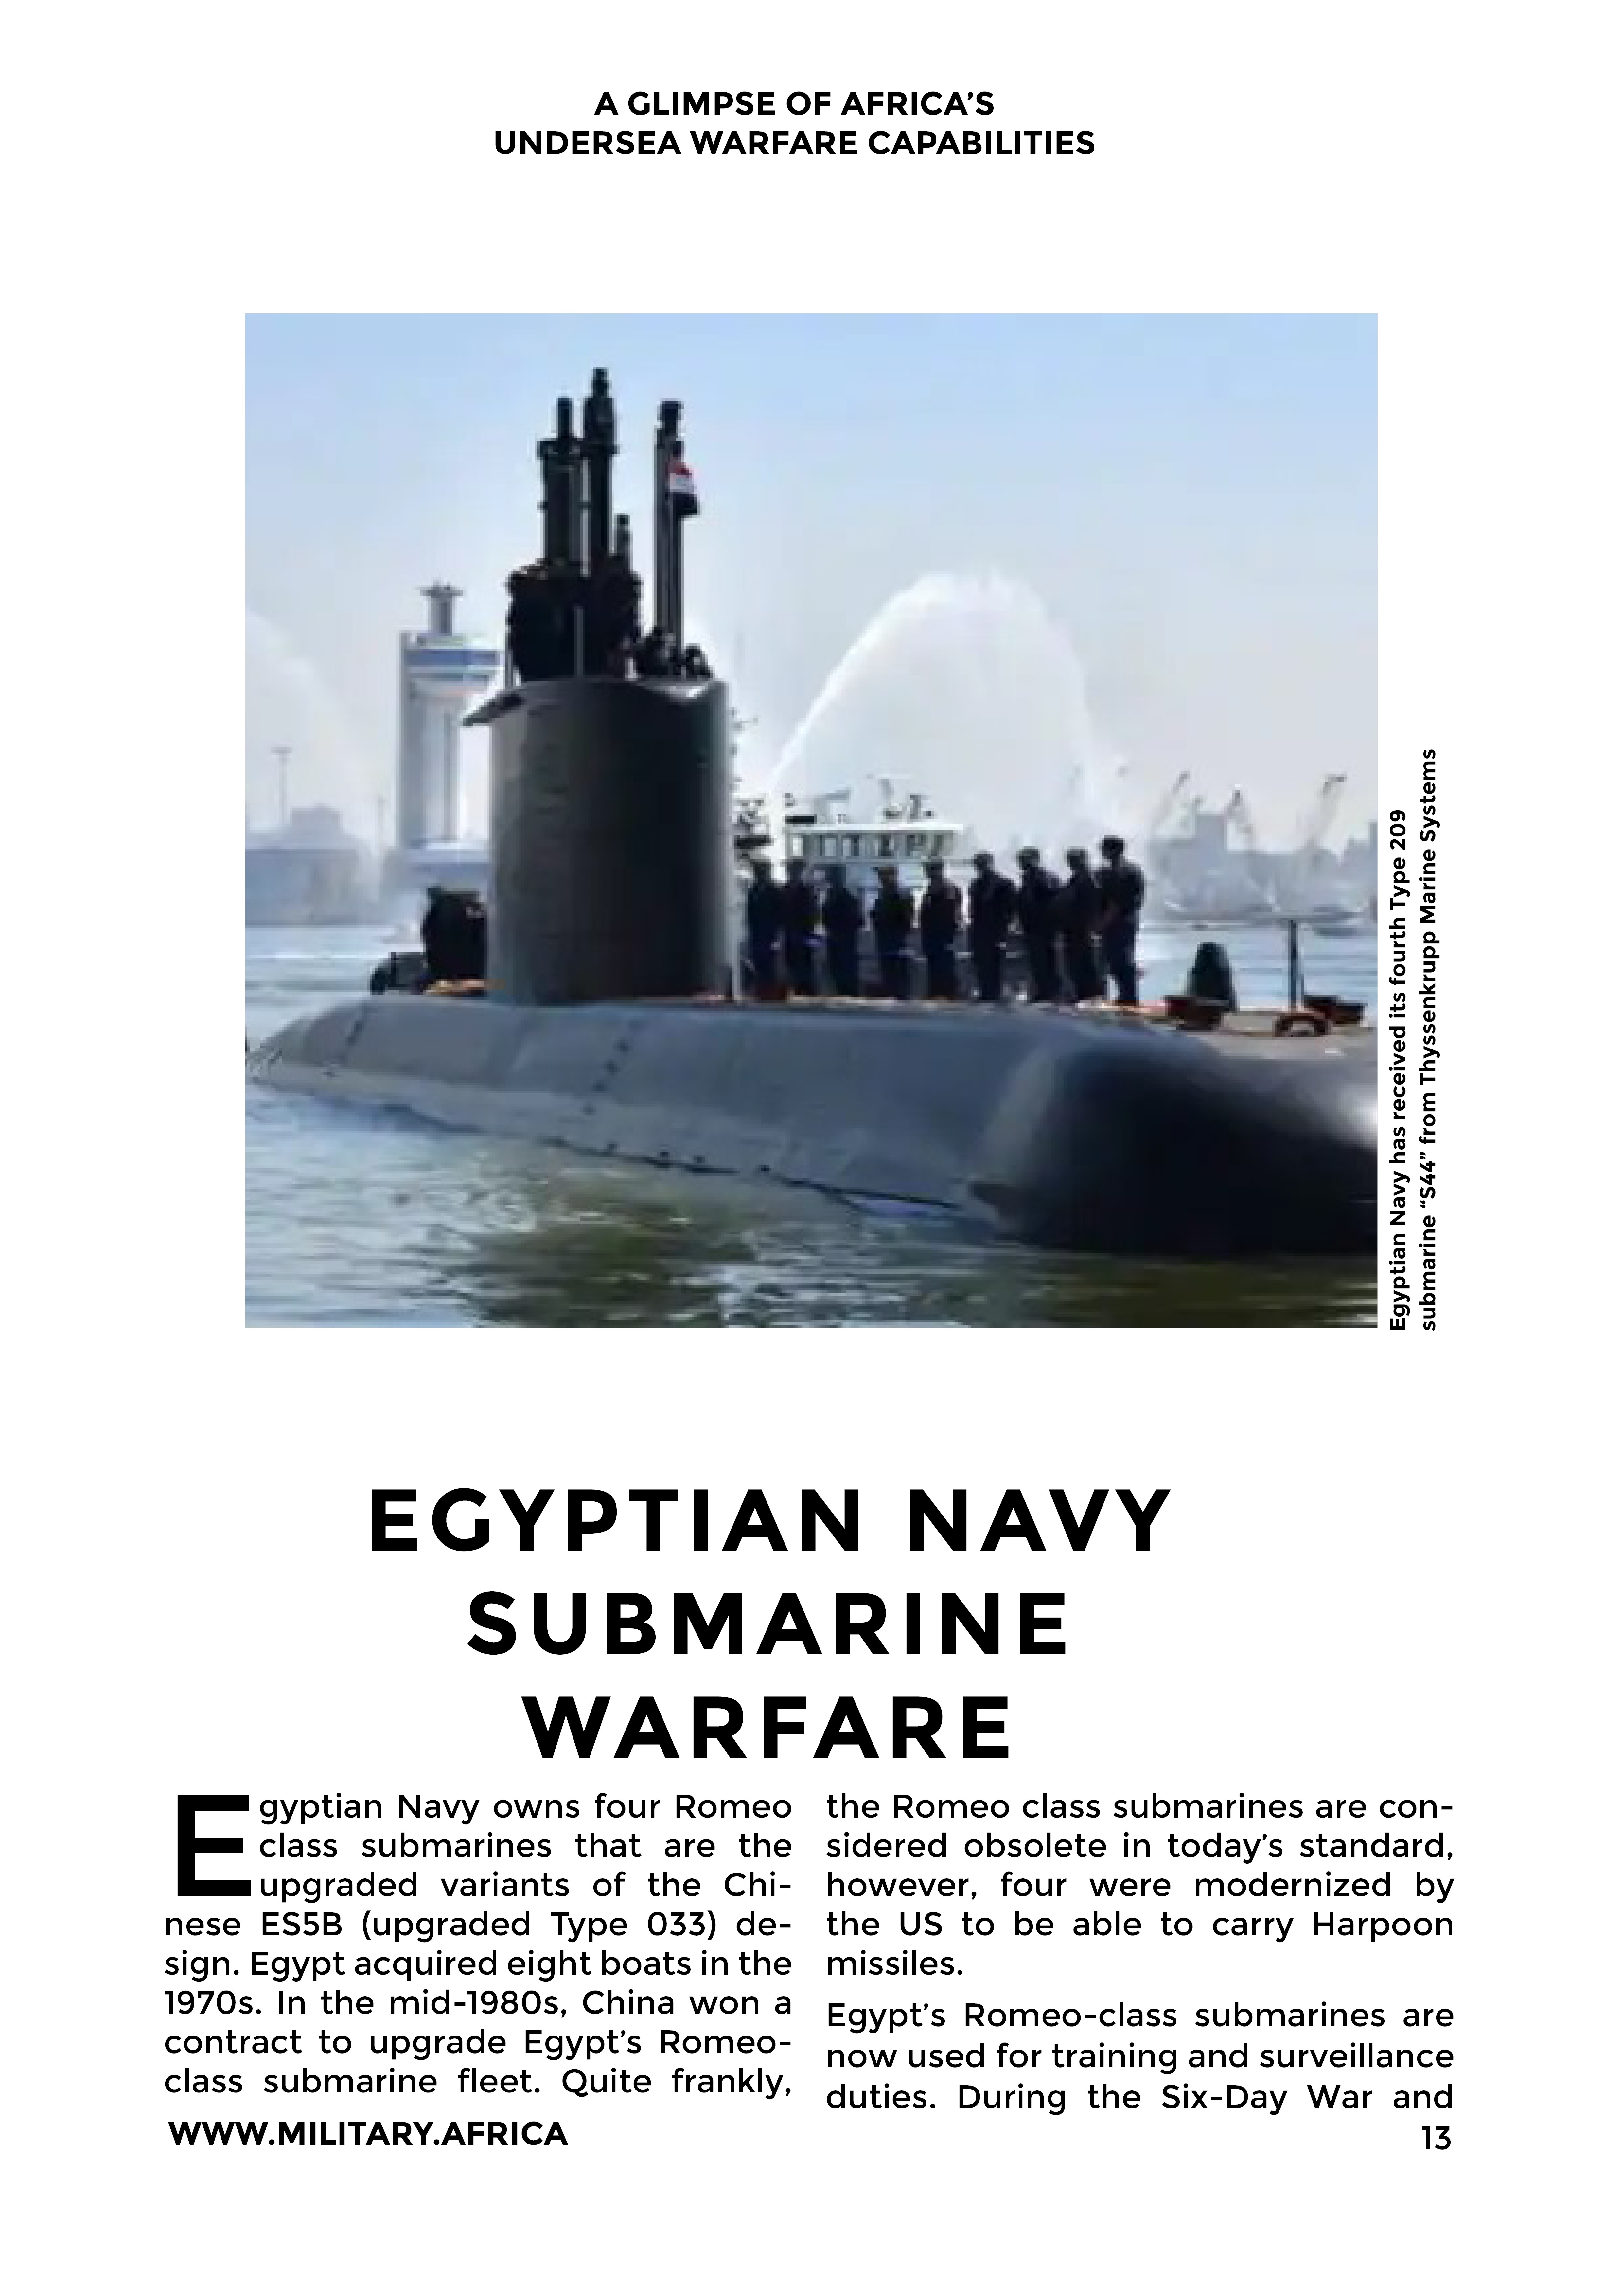 Submarines in Africa